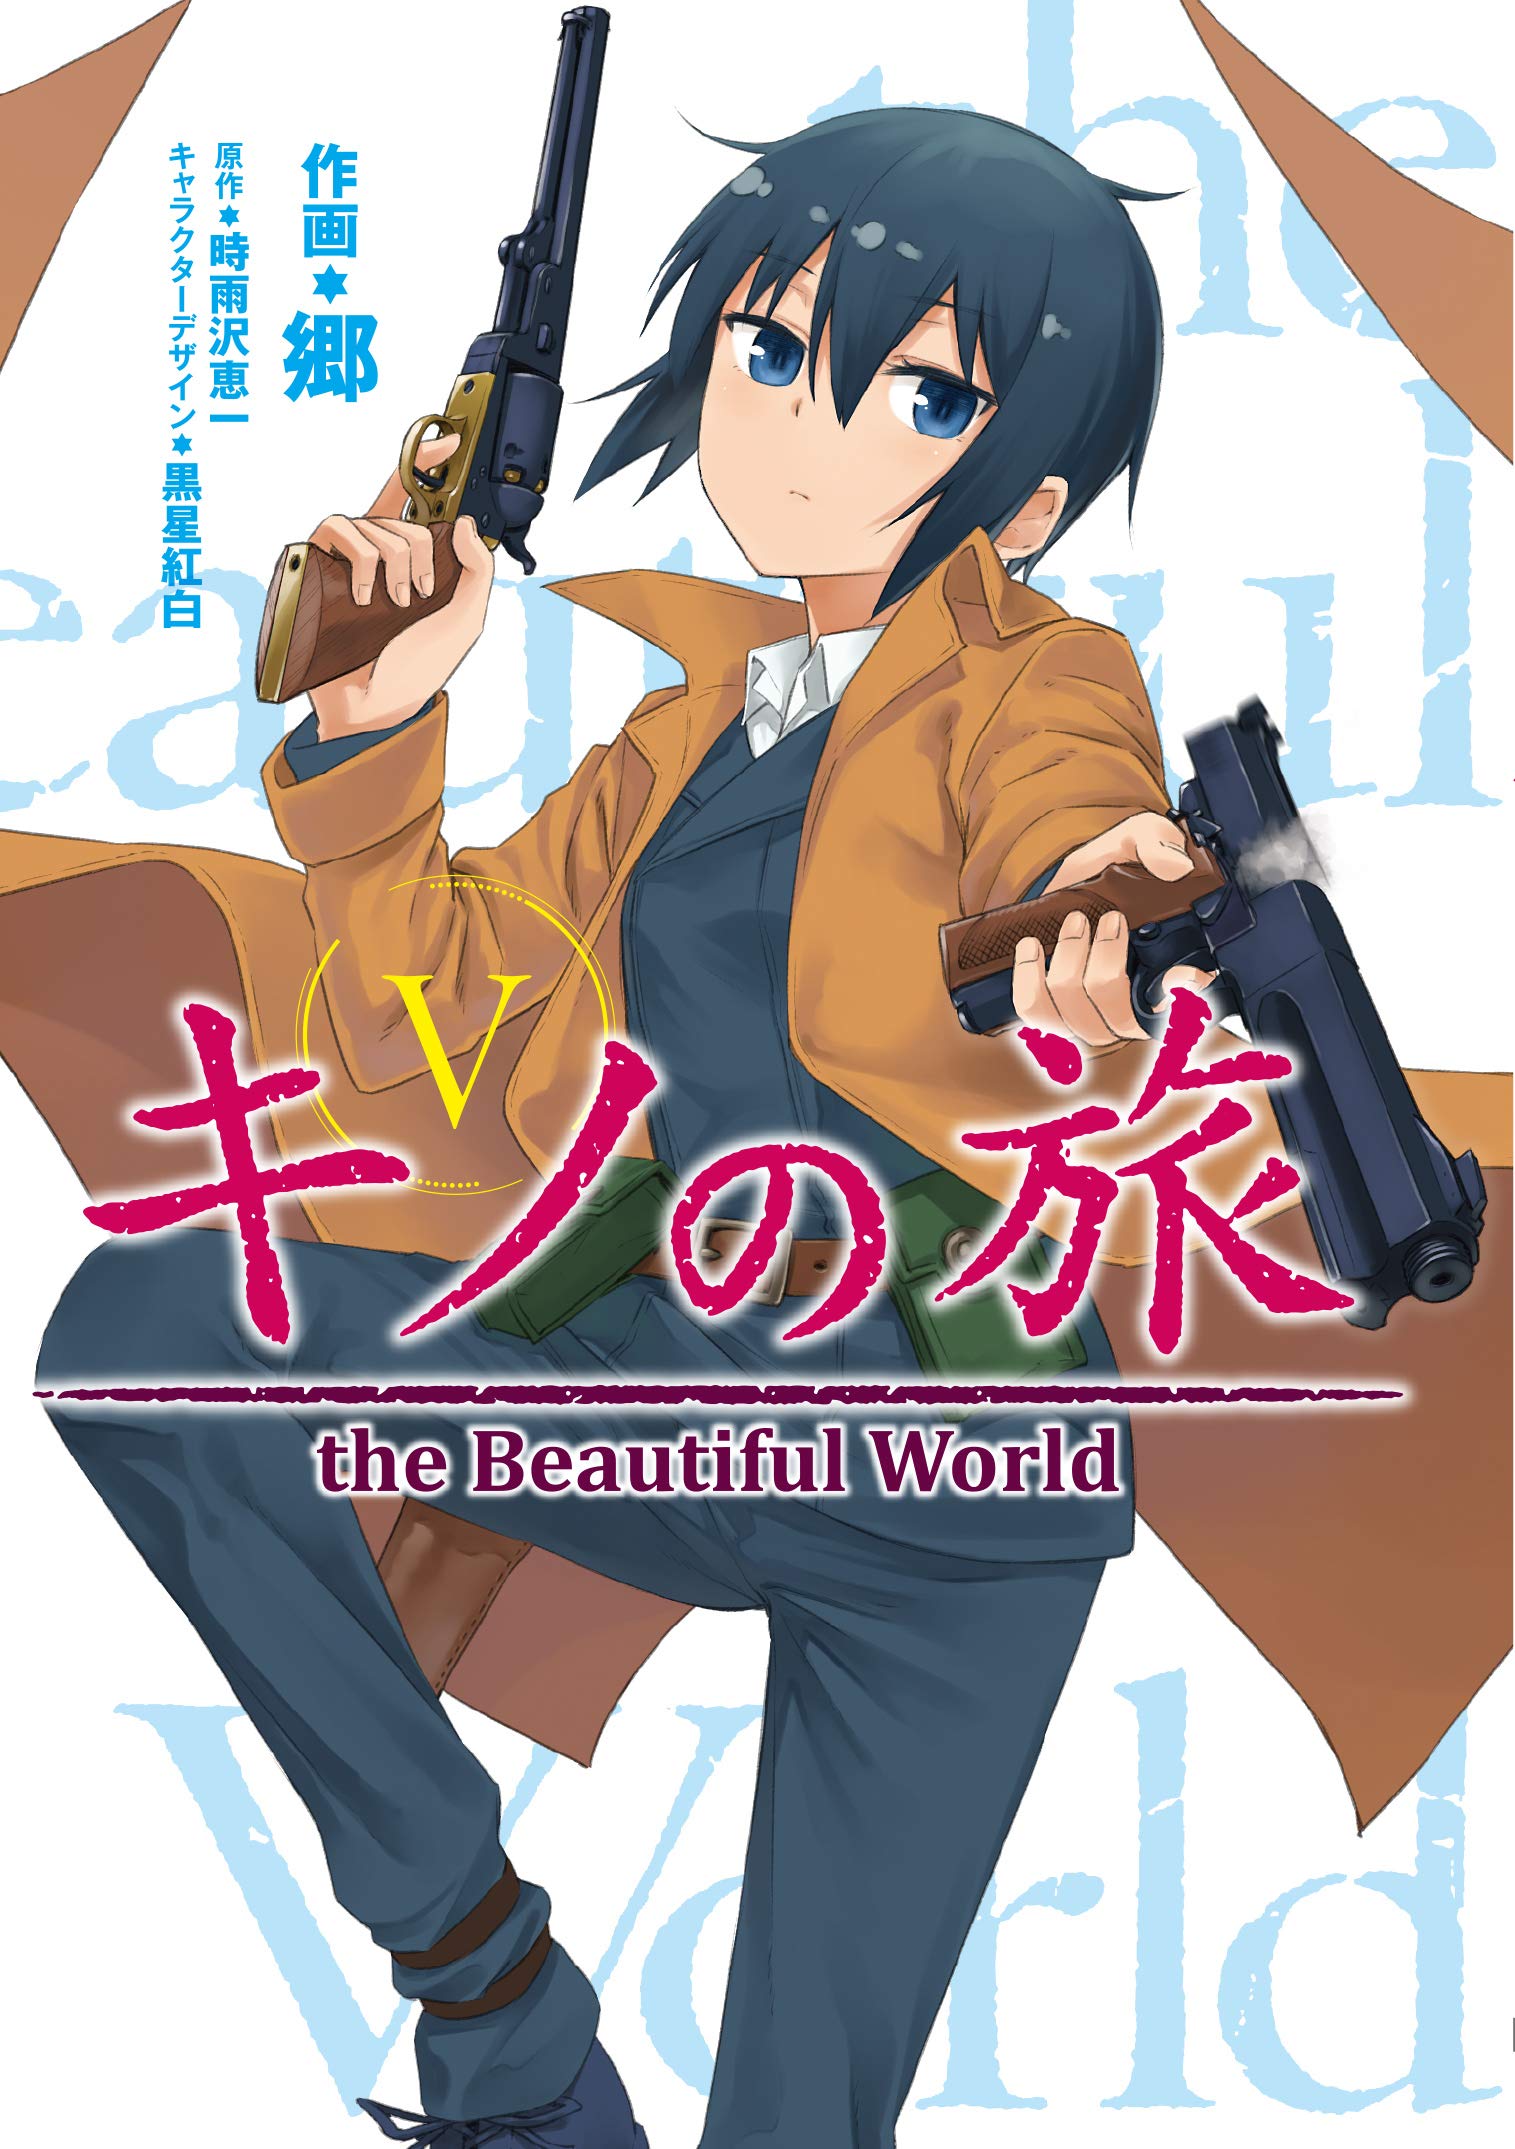 Kino's Journey Volume 1 (Kino no Tabi: The Beautiful World) - Manga Store 